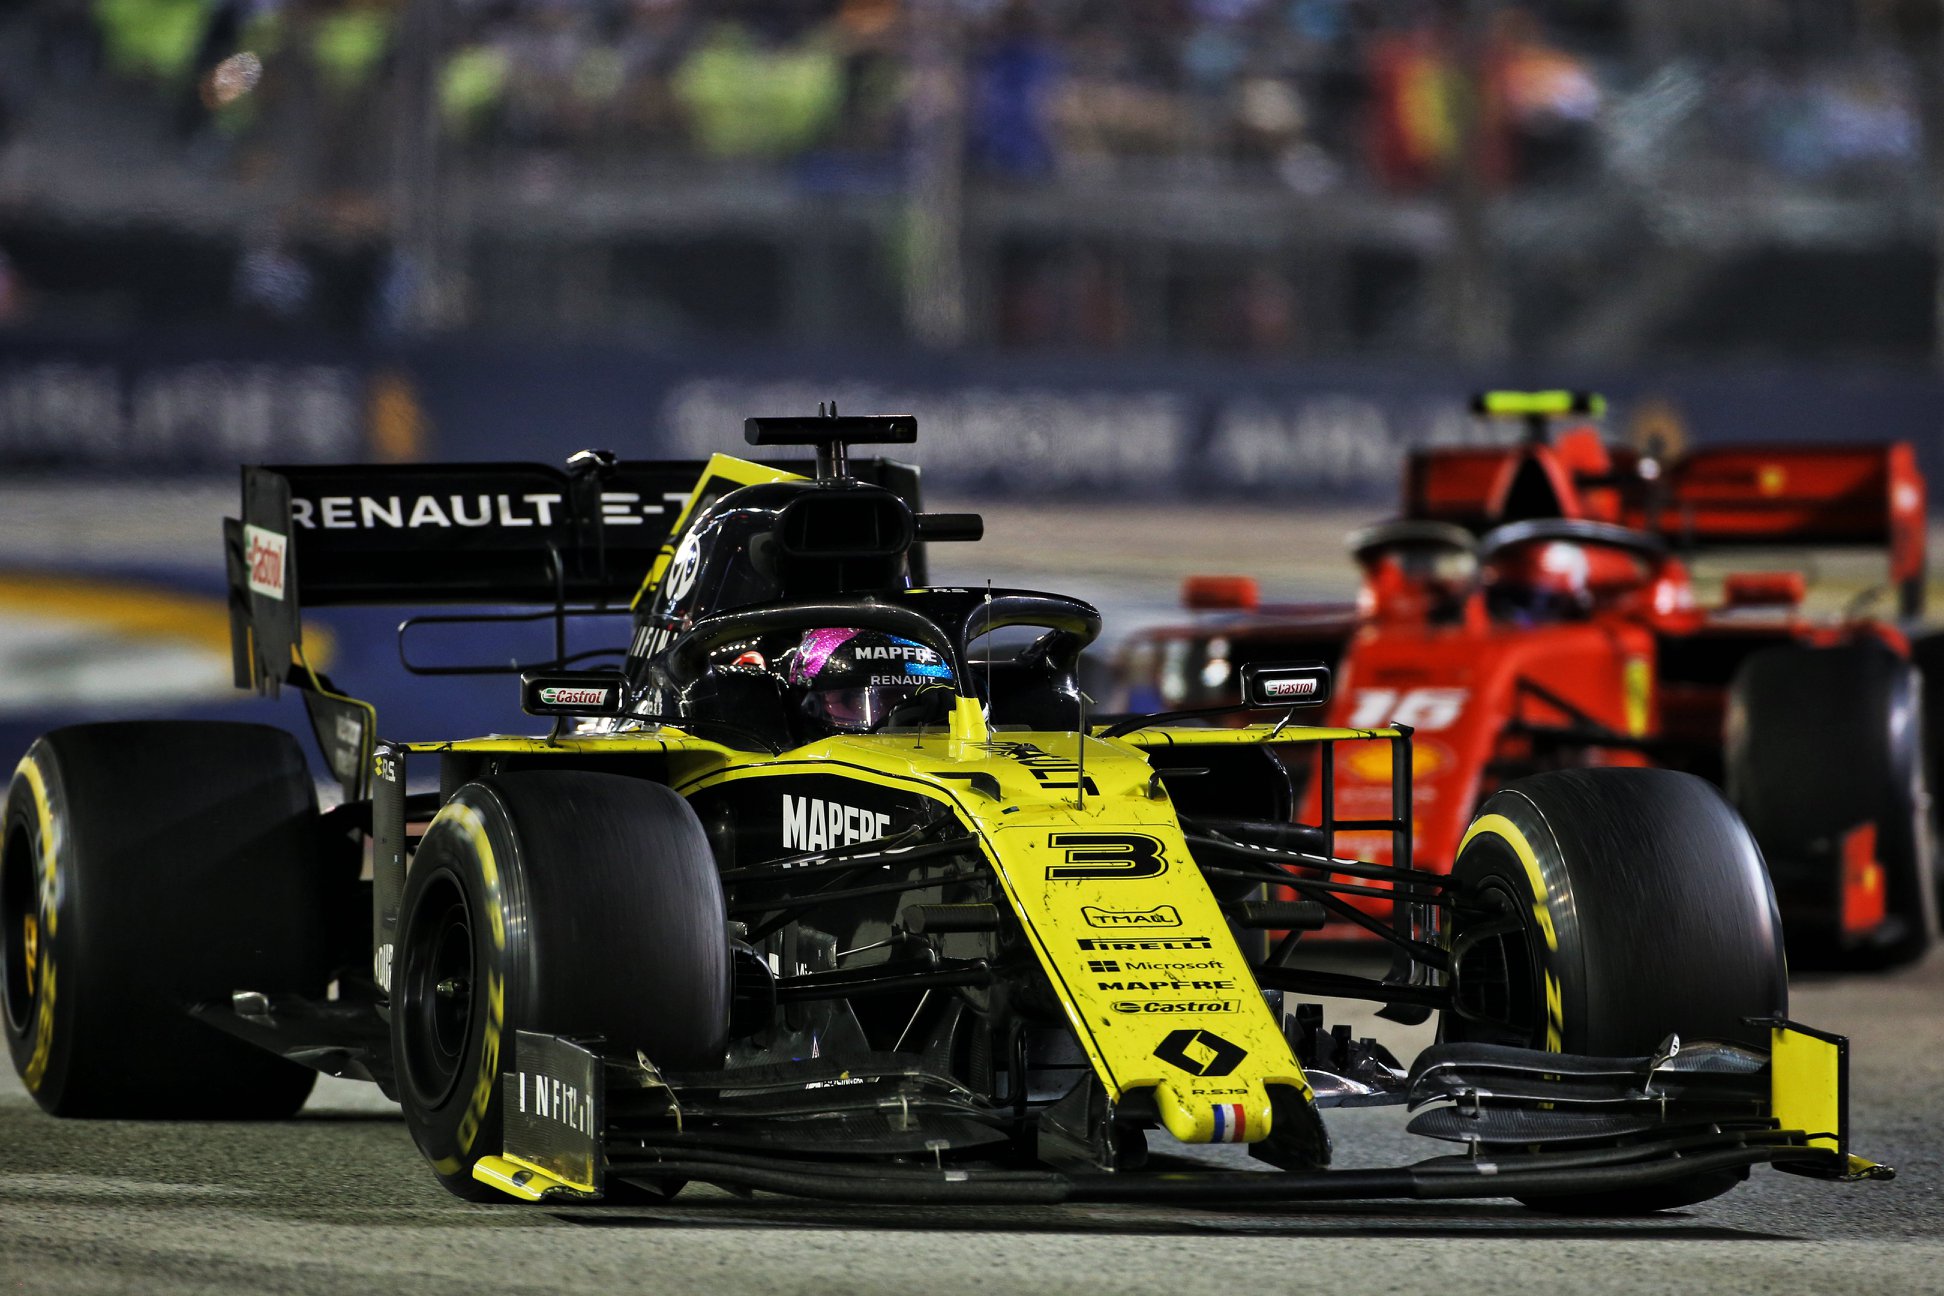 Teisėjų sprendimu nepatenkintas D. Ricciardo: dėl nieko keliavau per pusę pasaulio